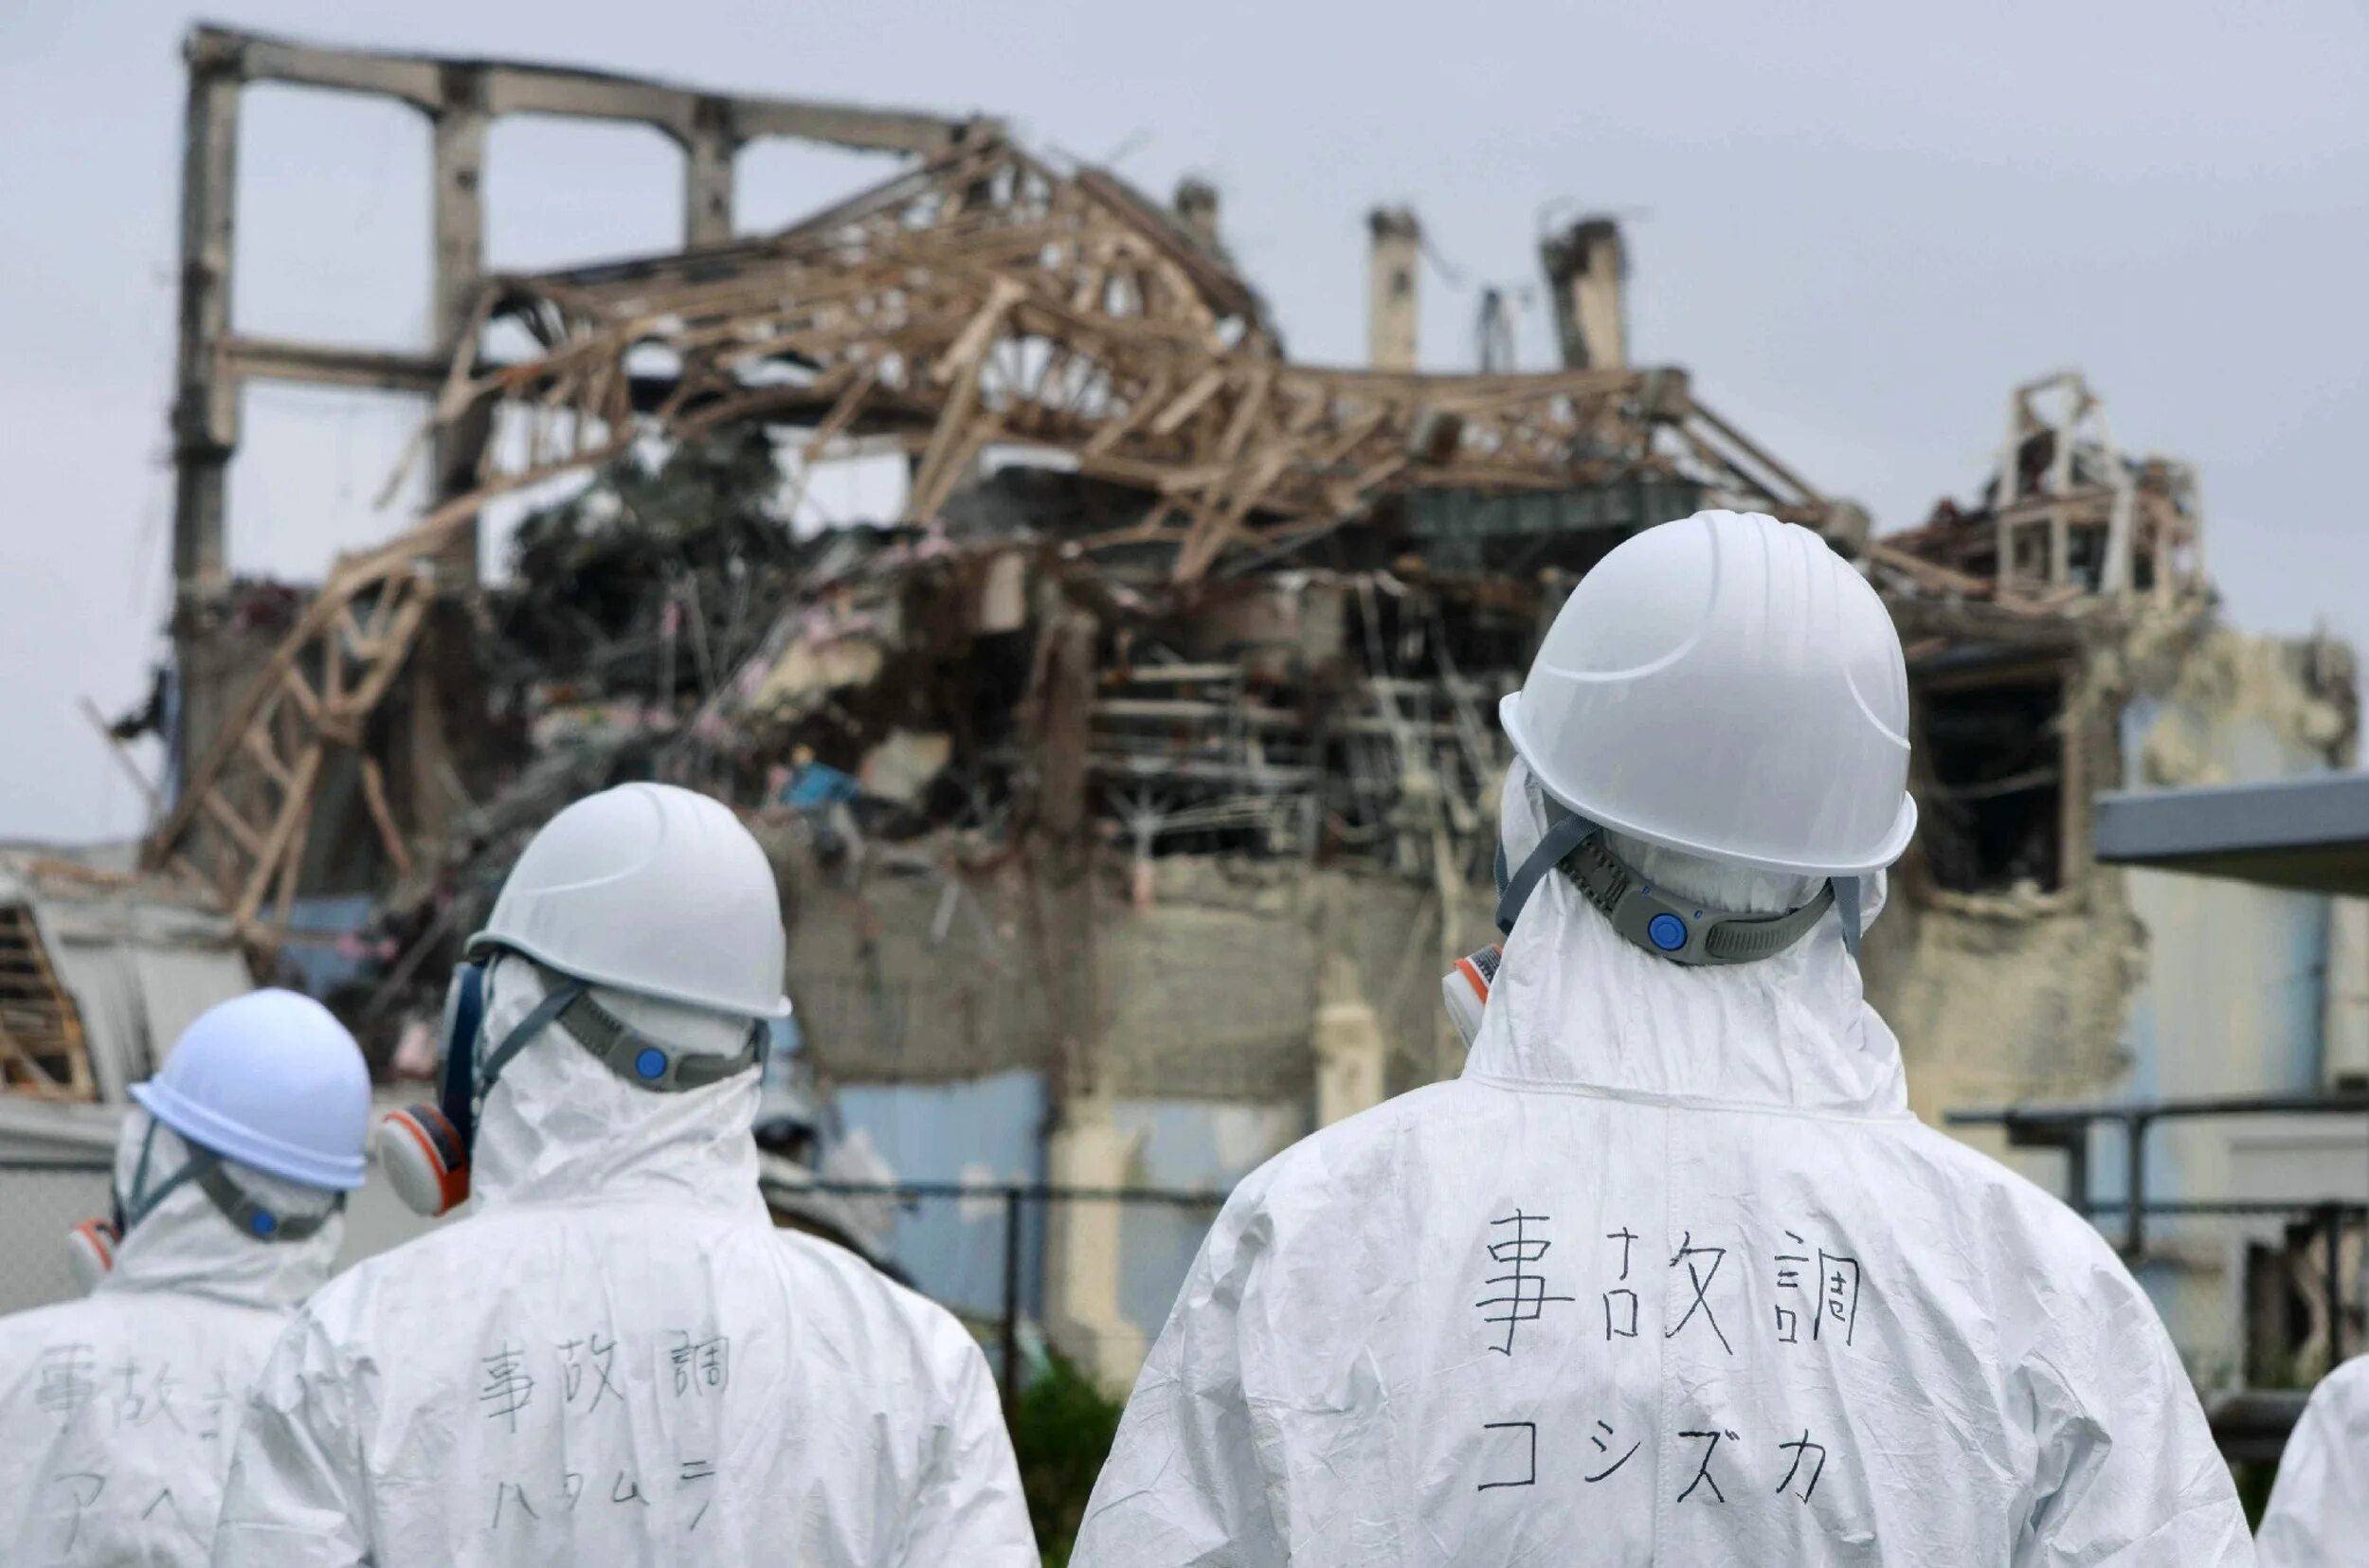 Японии на АЭС «Фукусима-1». Авария на АЭС Фукусима-1. АЭС Фукусима-1, Япония, 2011. АЭС Фукусима 2011. Авария на аэс в японии